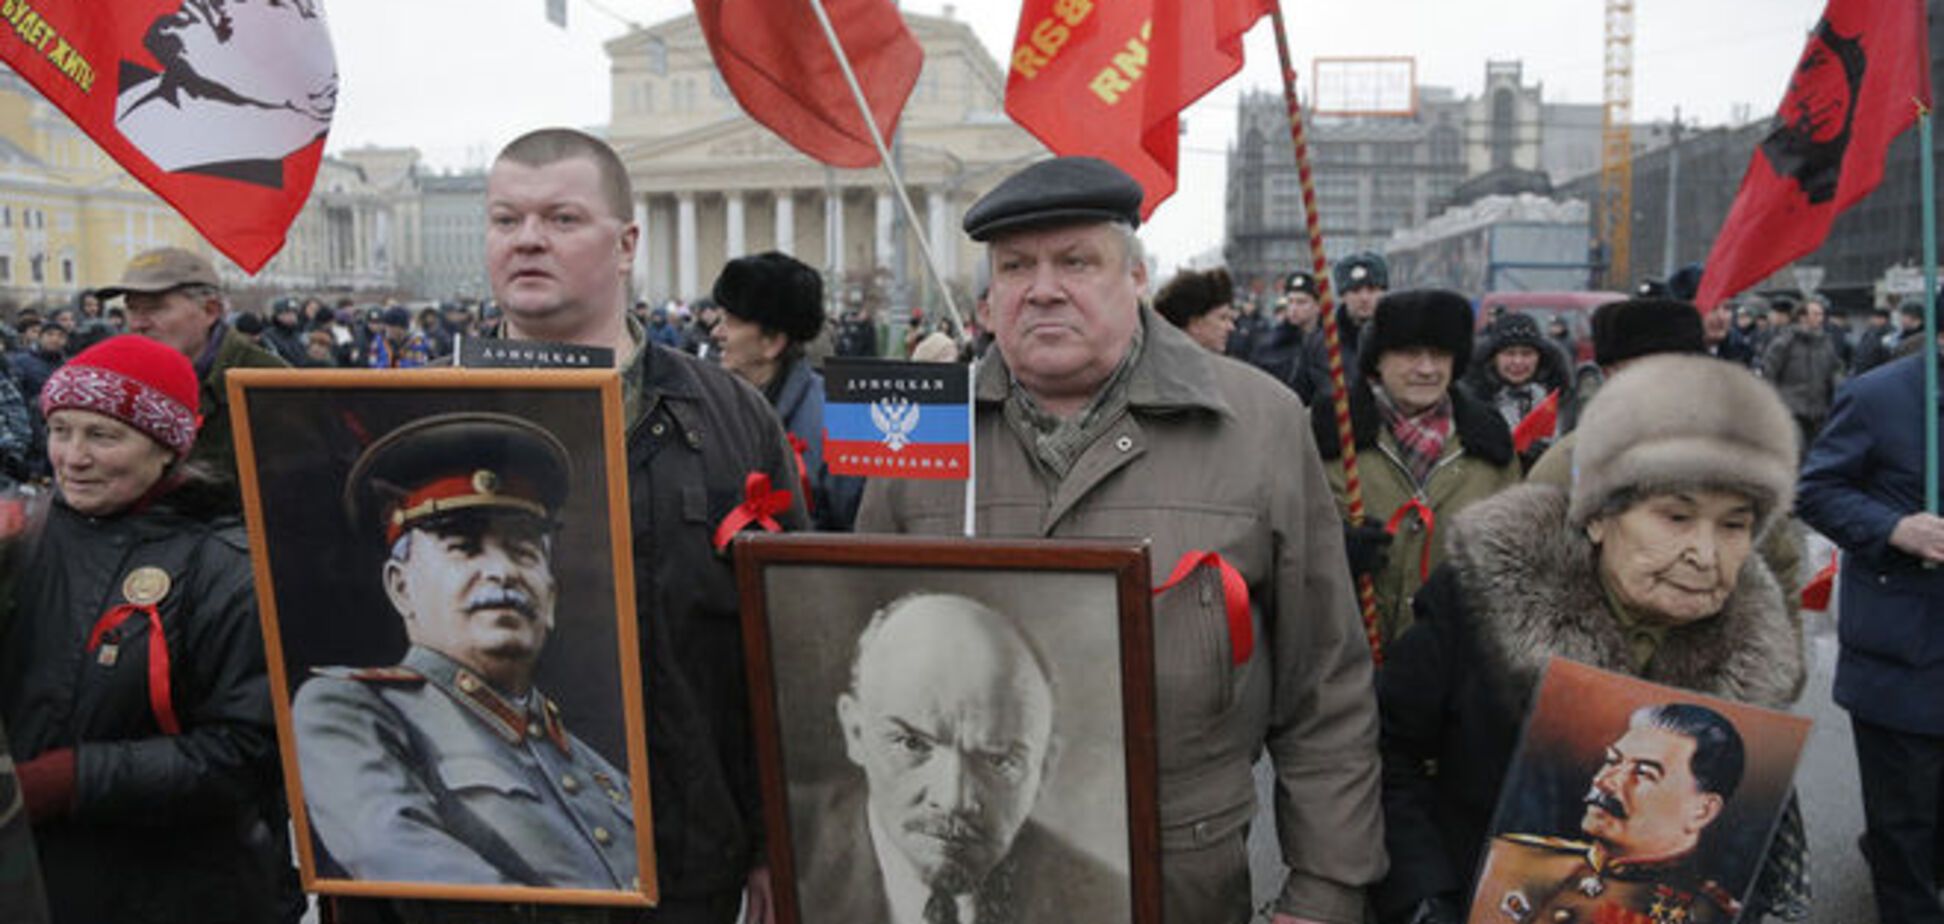 Антиукраинская риторика Кремля возрастет к 70-й годовщине победы - эксперт